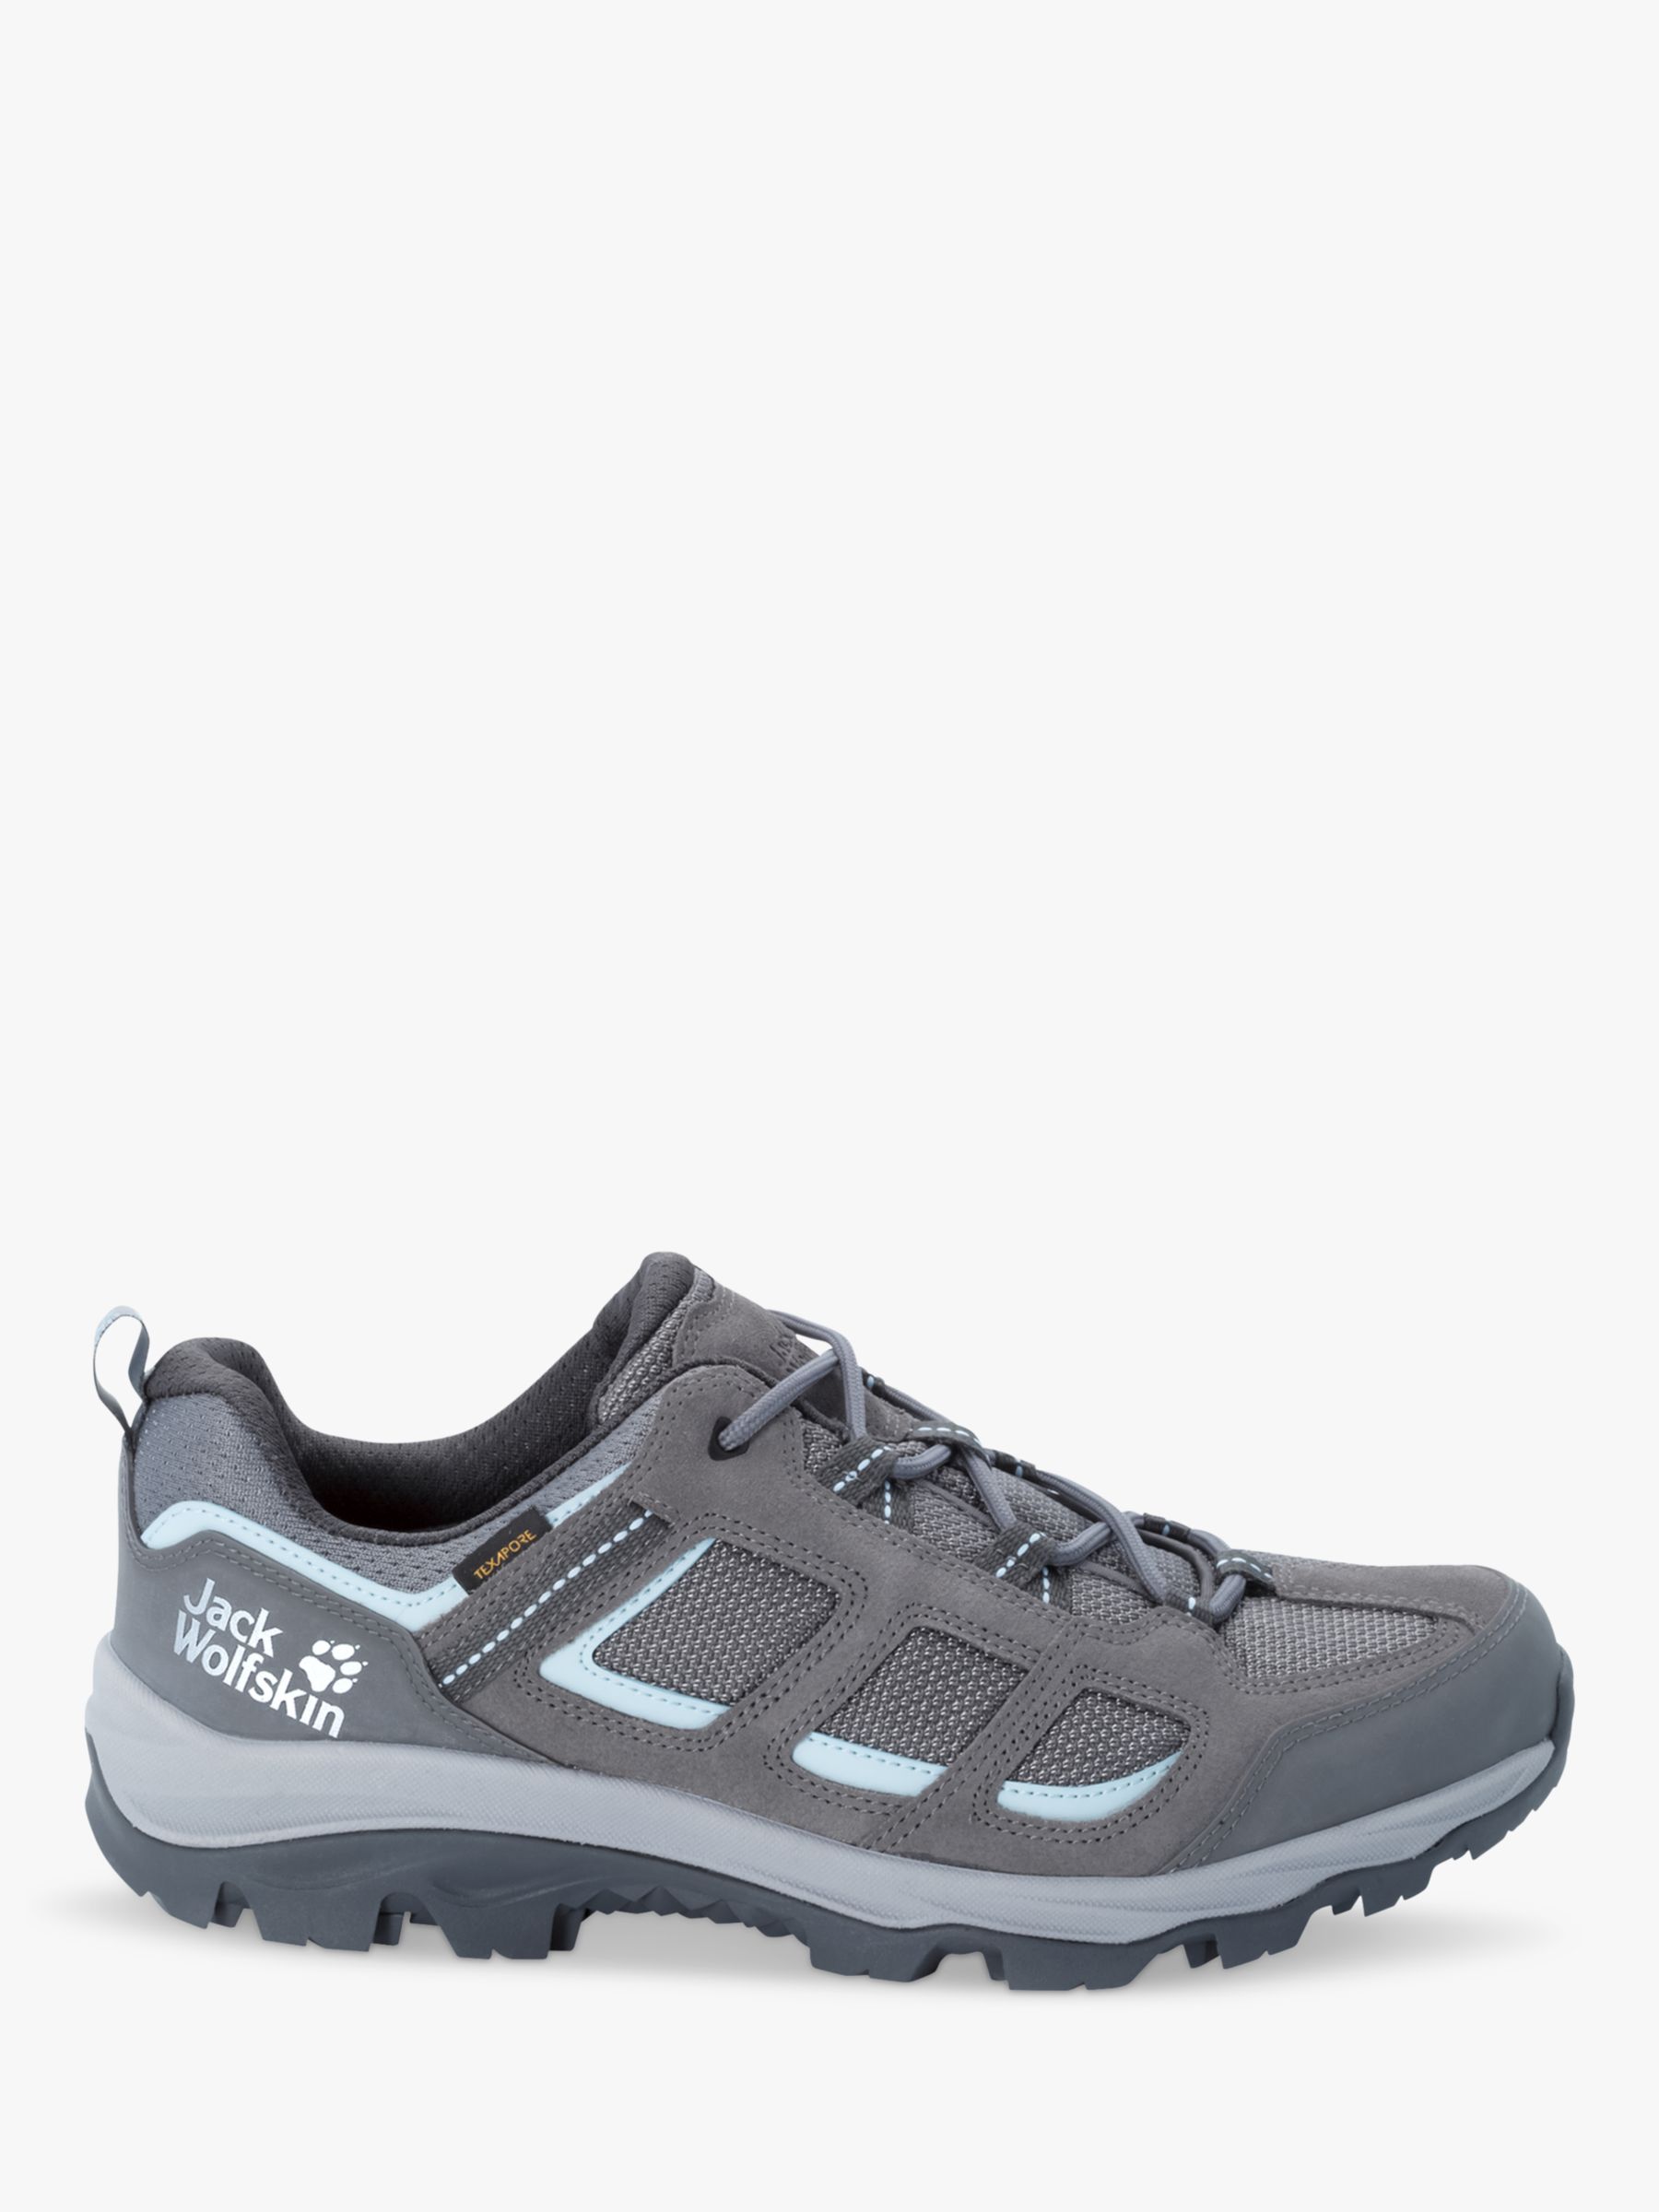 Jack Wolfskin Vojo 3 Texapore Women's Waterproof Walking Shoes, Grey ...